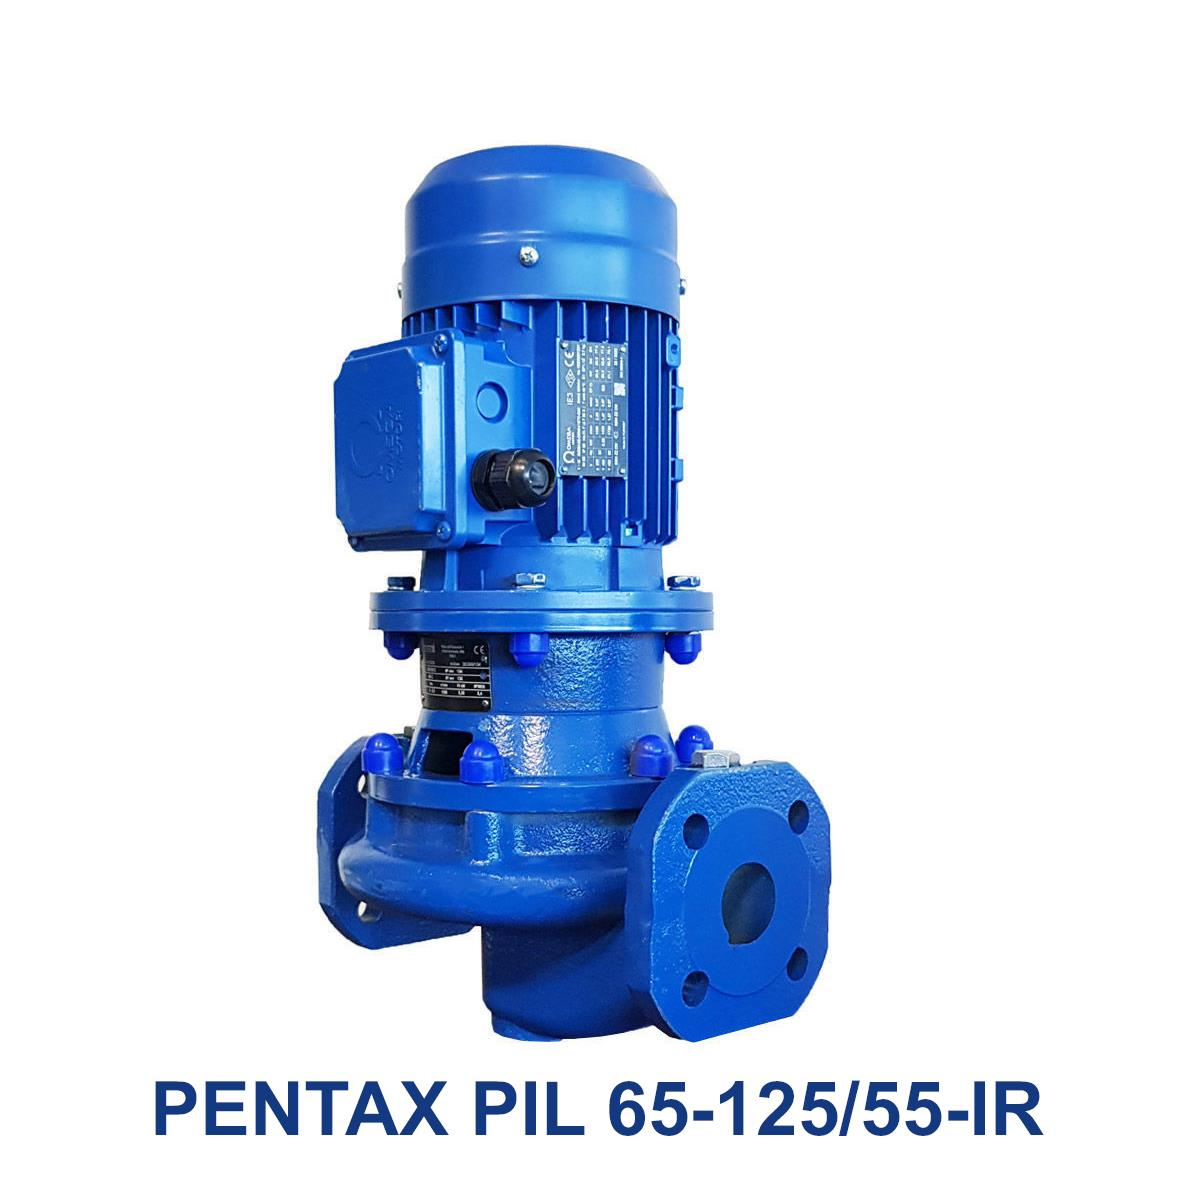 PENTAX-PIL-65-125-55-IR